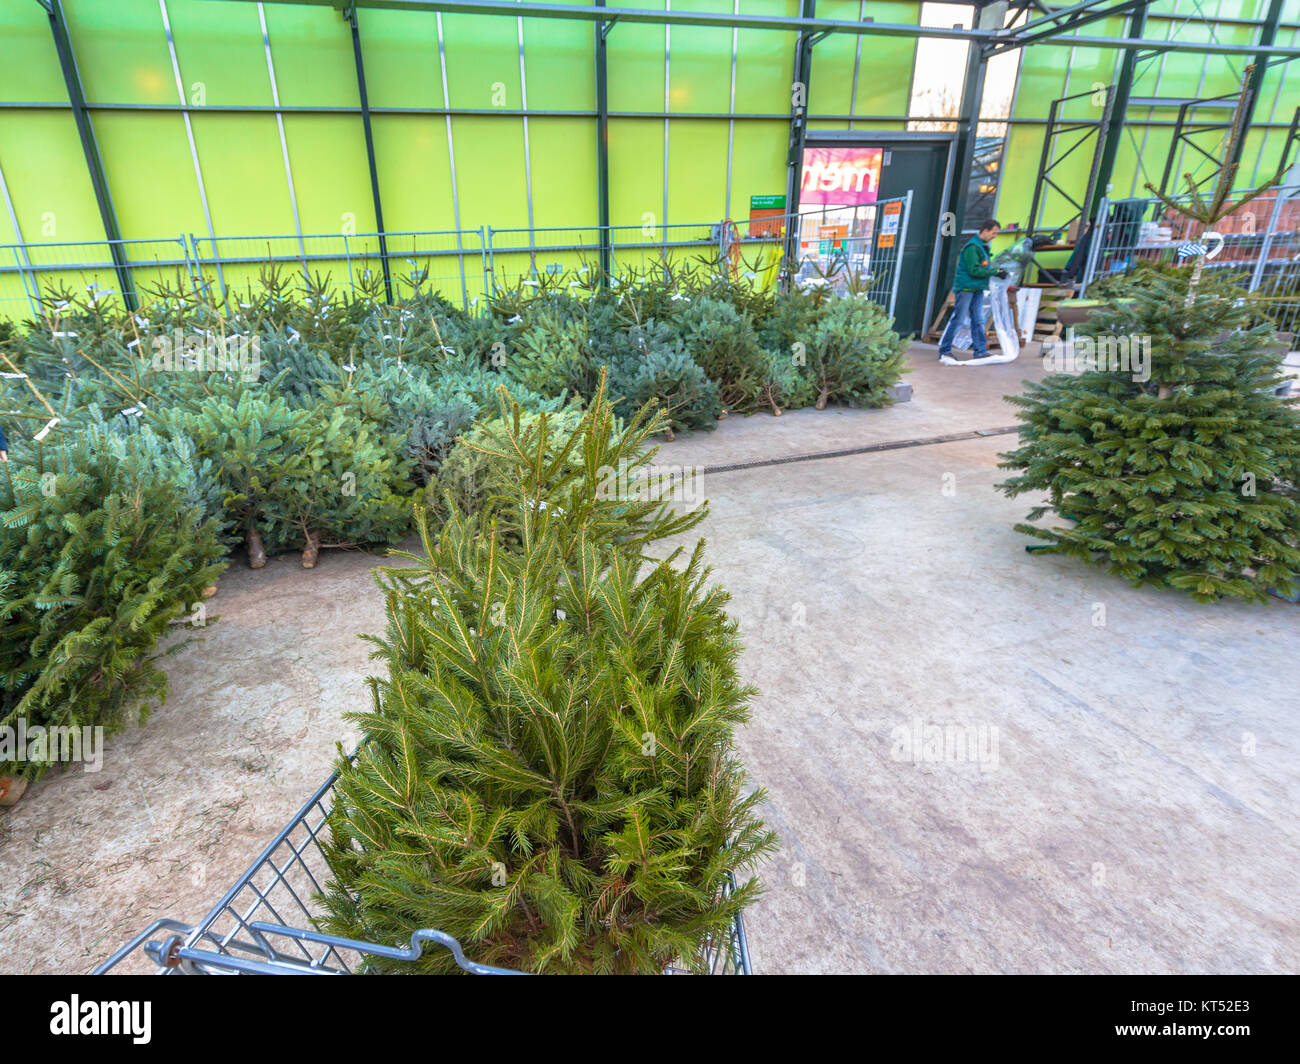 Christmas tree in a cart at a xmas warehouse market in a garden center Stock Photo